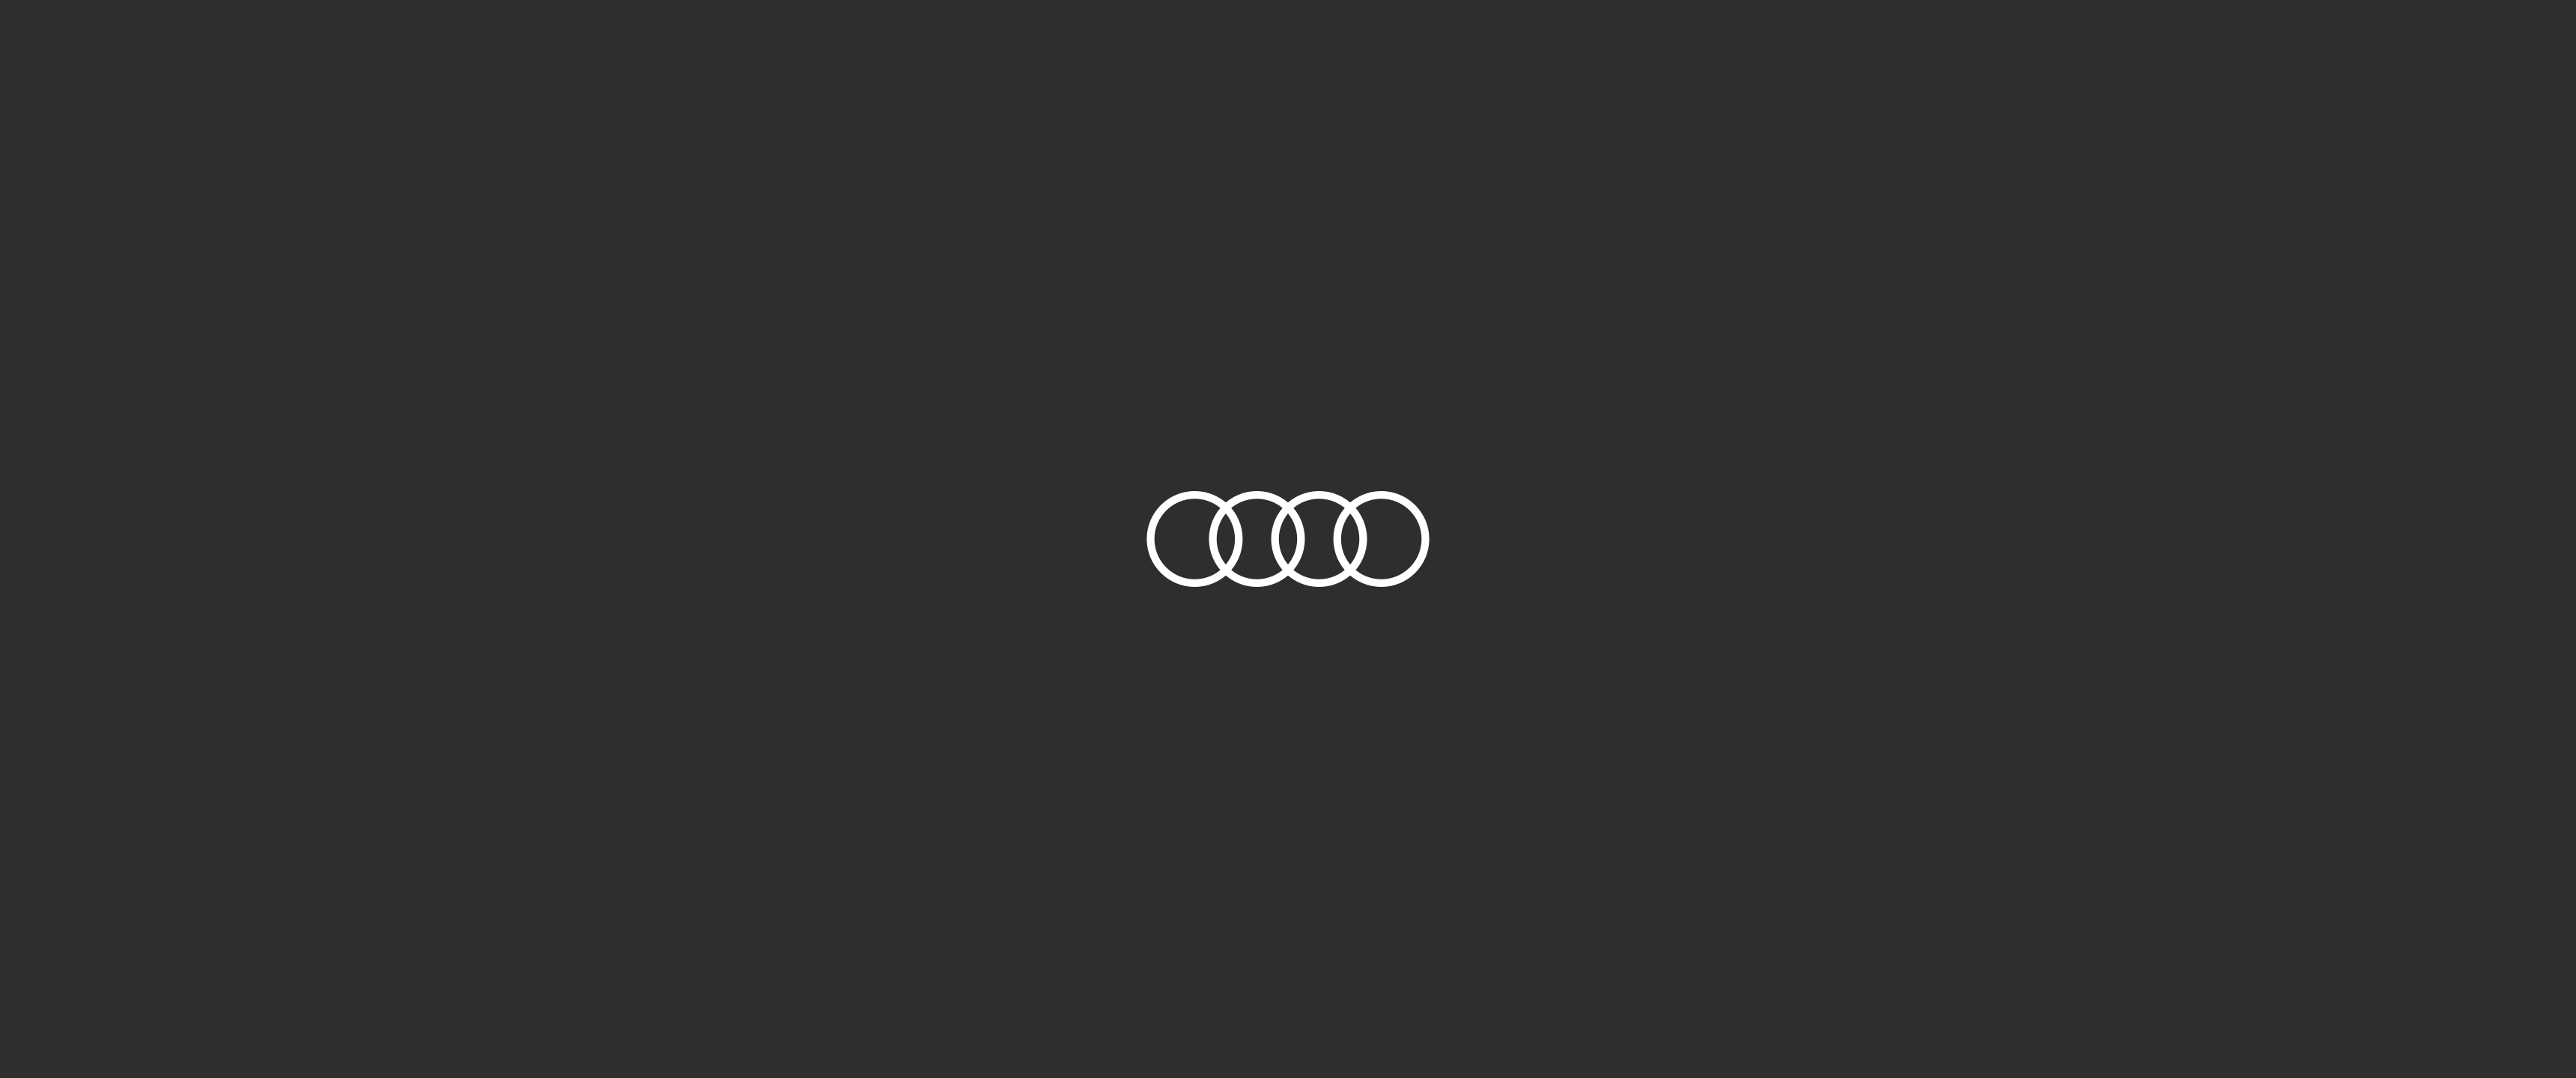 Audi UWQHD wallpaper (self made). Business blog, Wallpaper, HD wallpaper